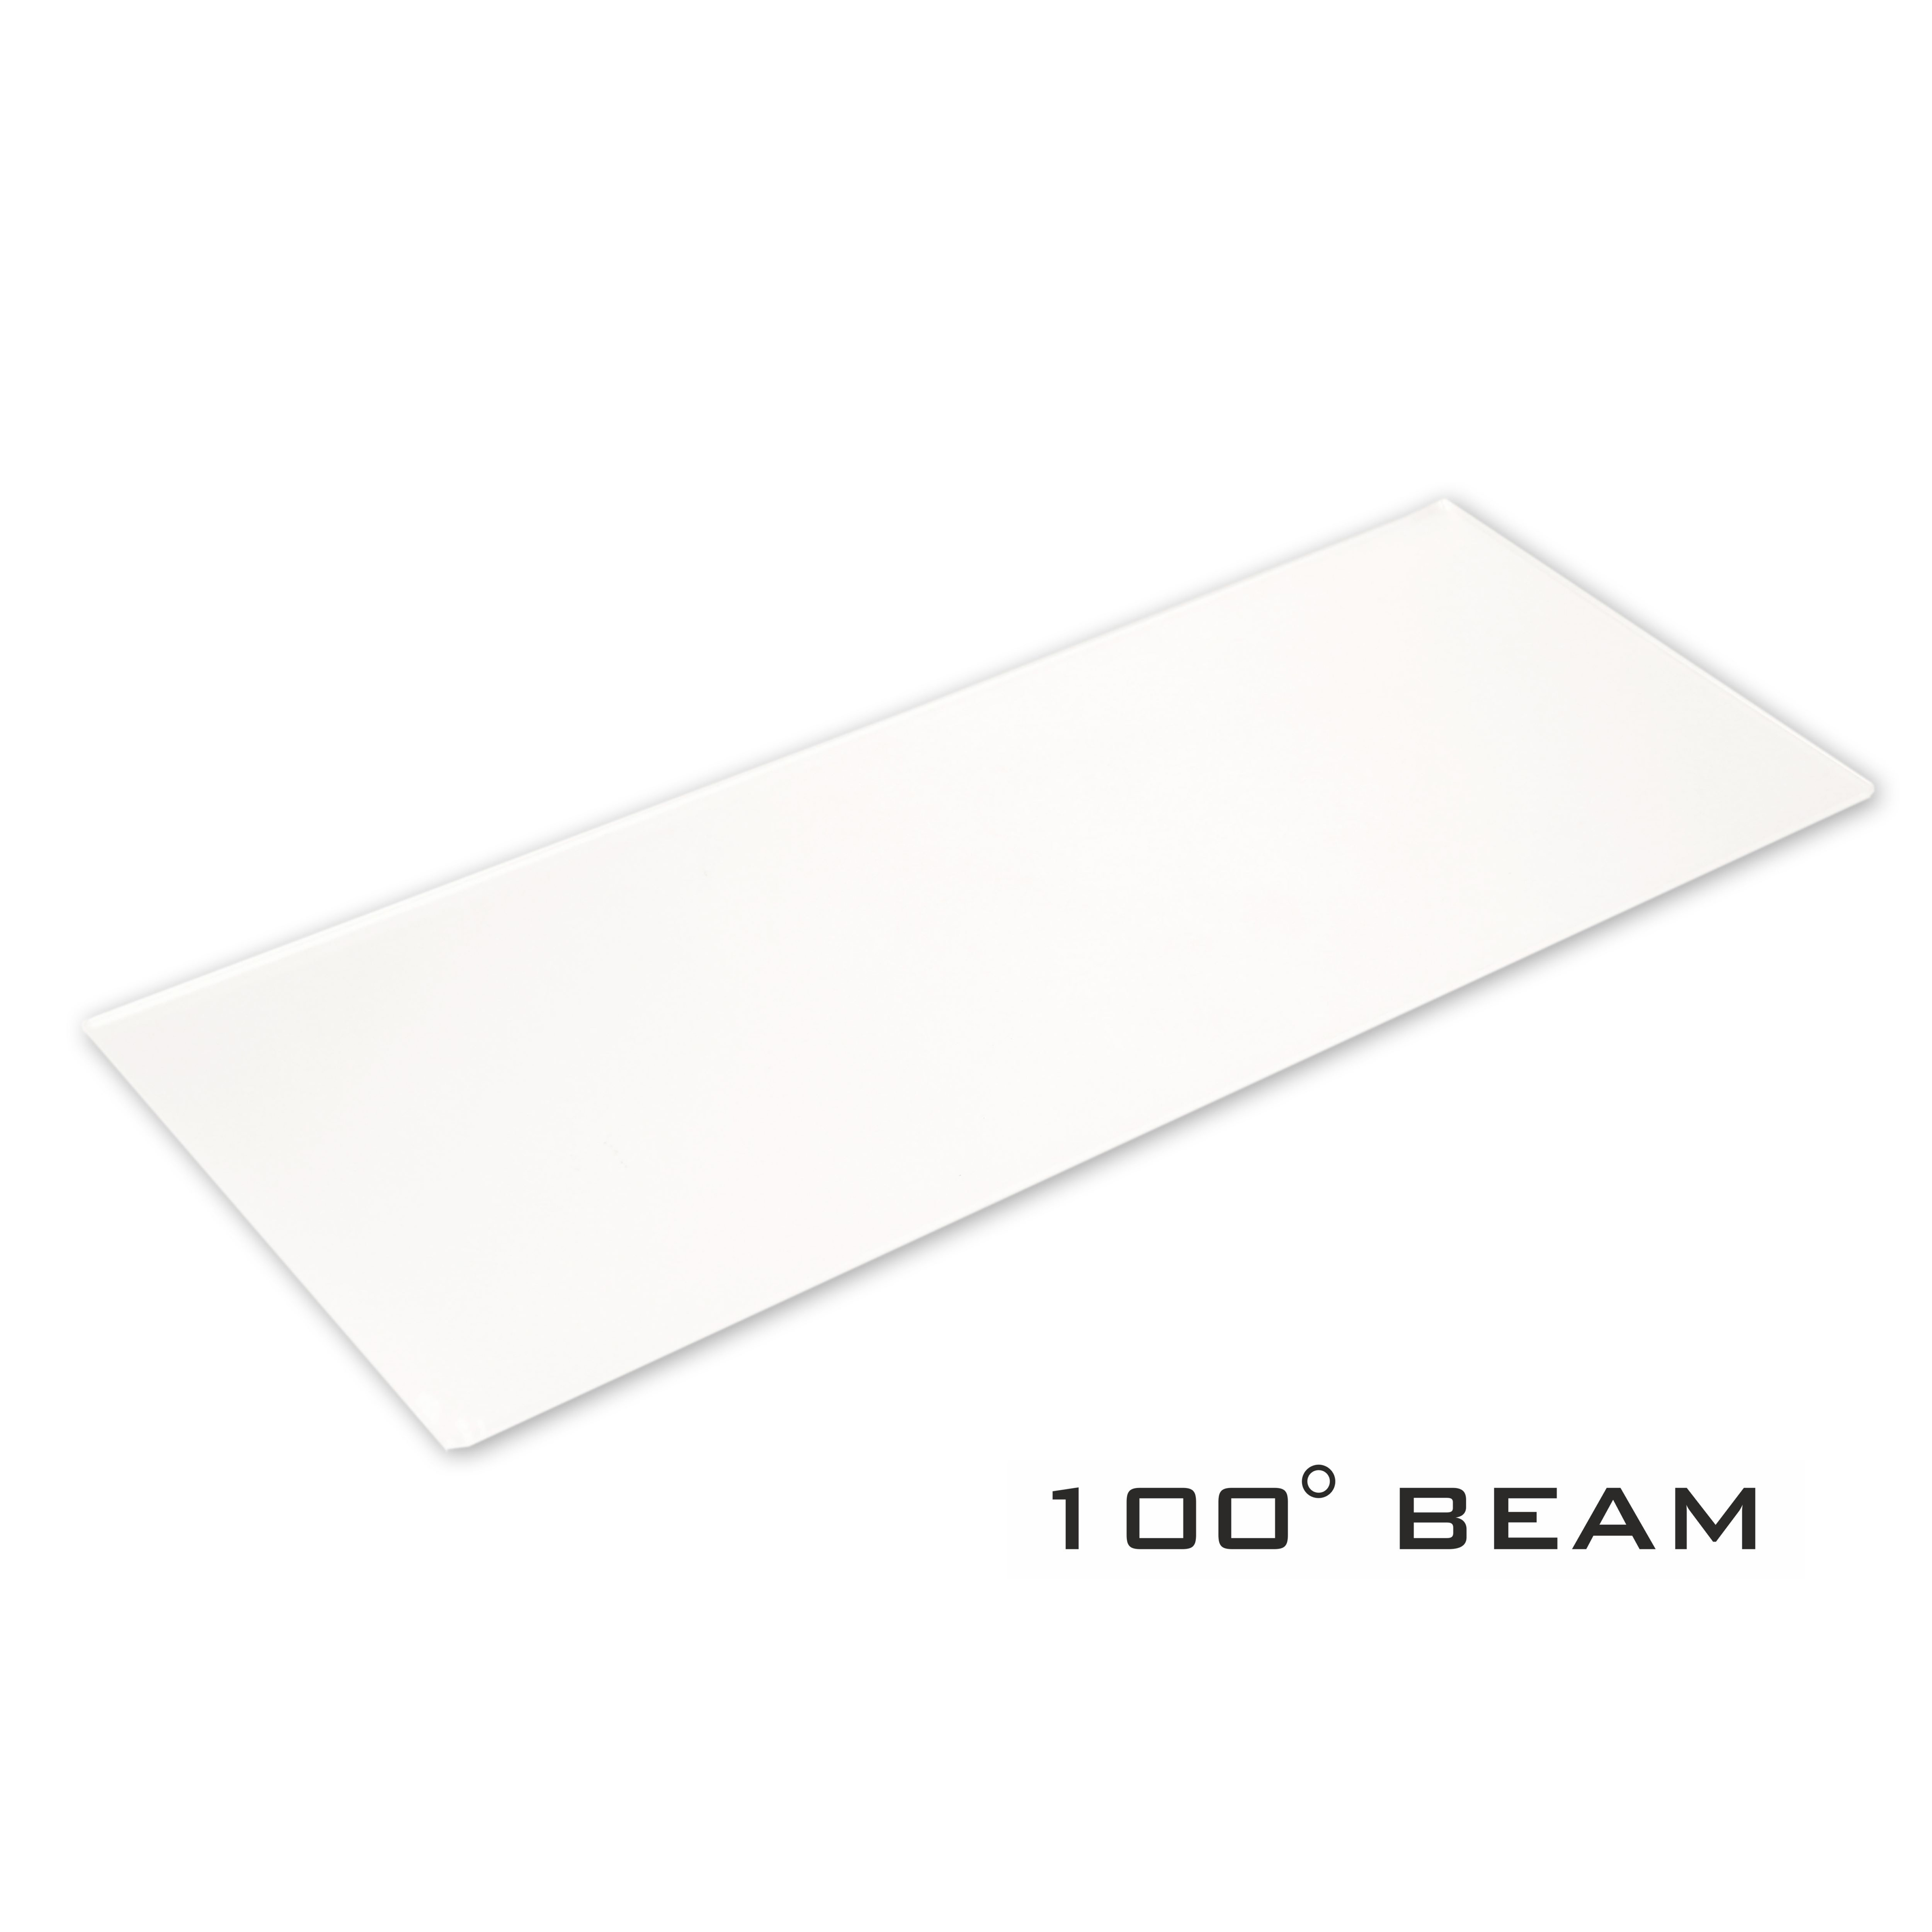 Beam shaper voor BT-CHROMA 800: wijzigt de standaard lichtbundel in 100- verticaal x 100- horizontaal